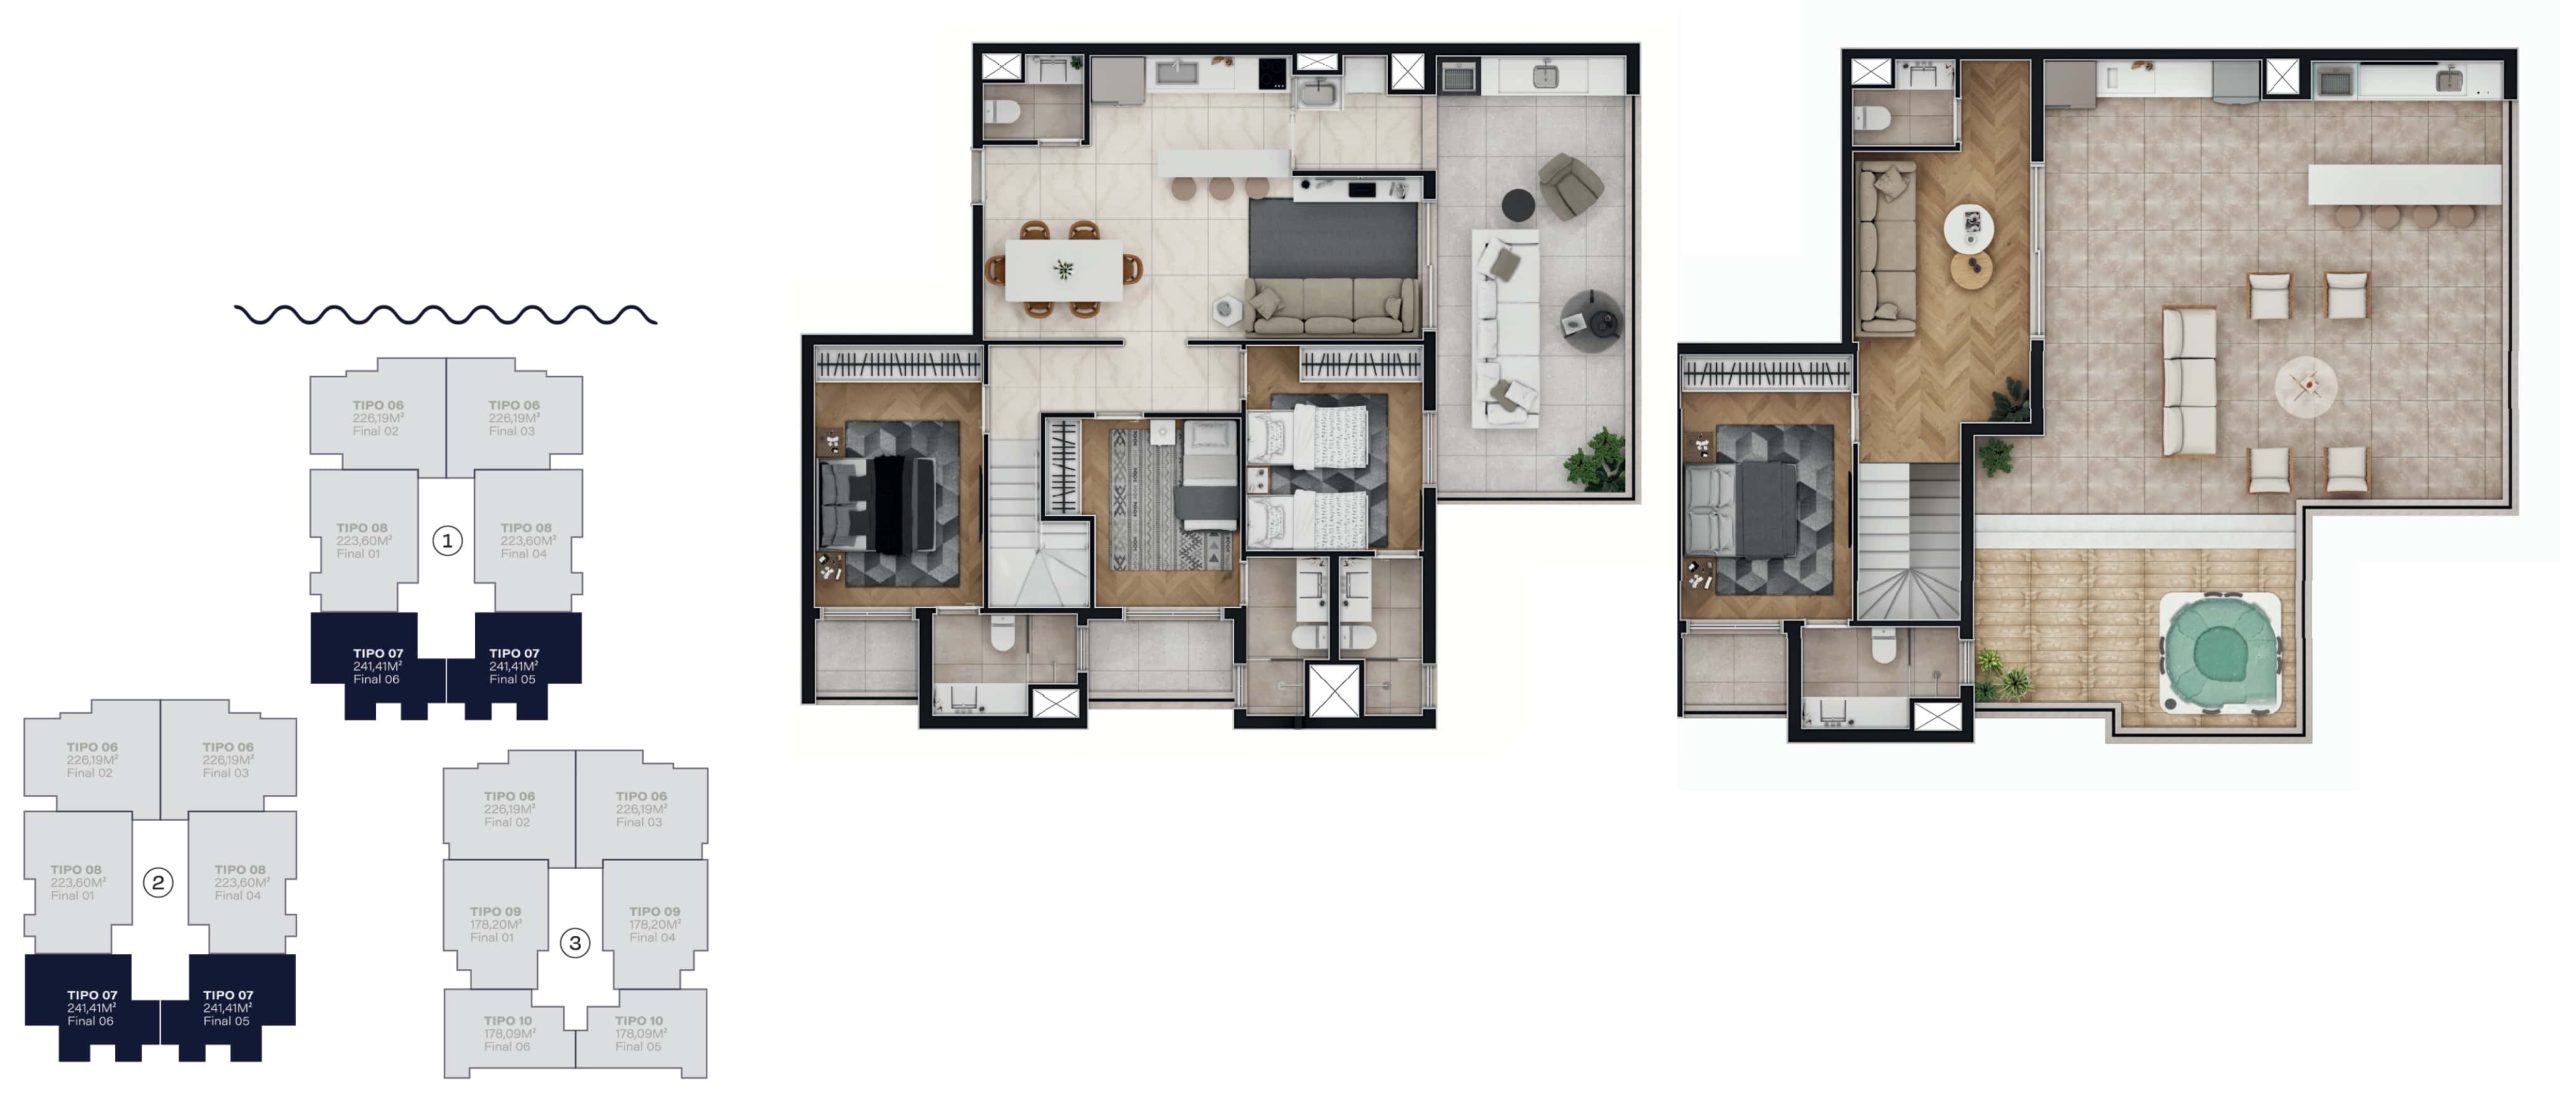 Duplex - Unidade com 241,41 m²<